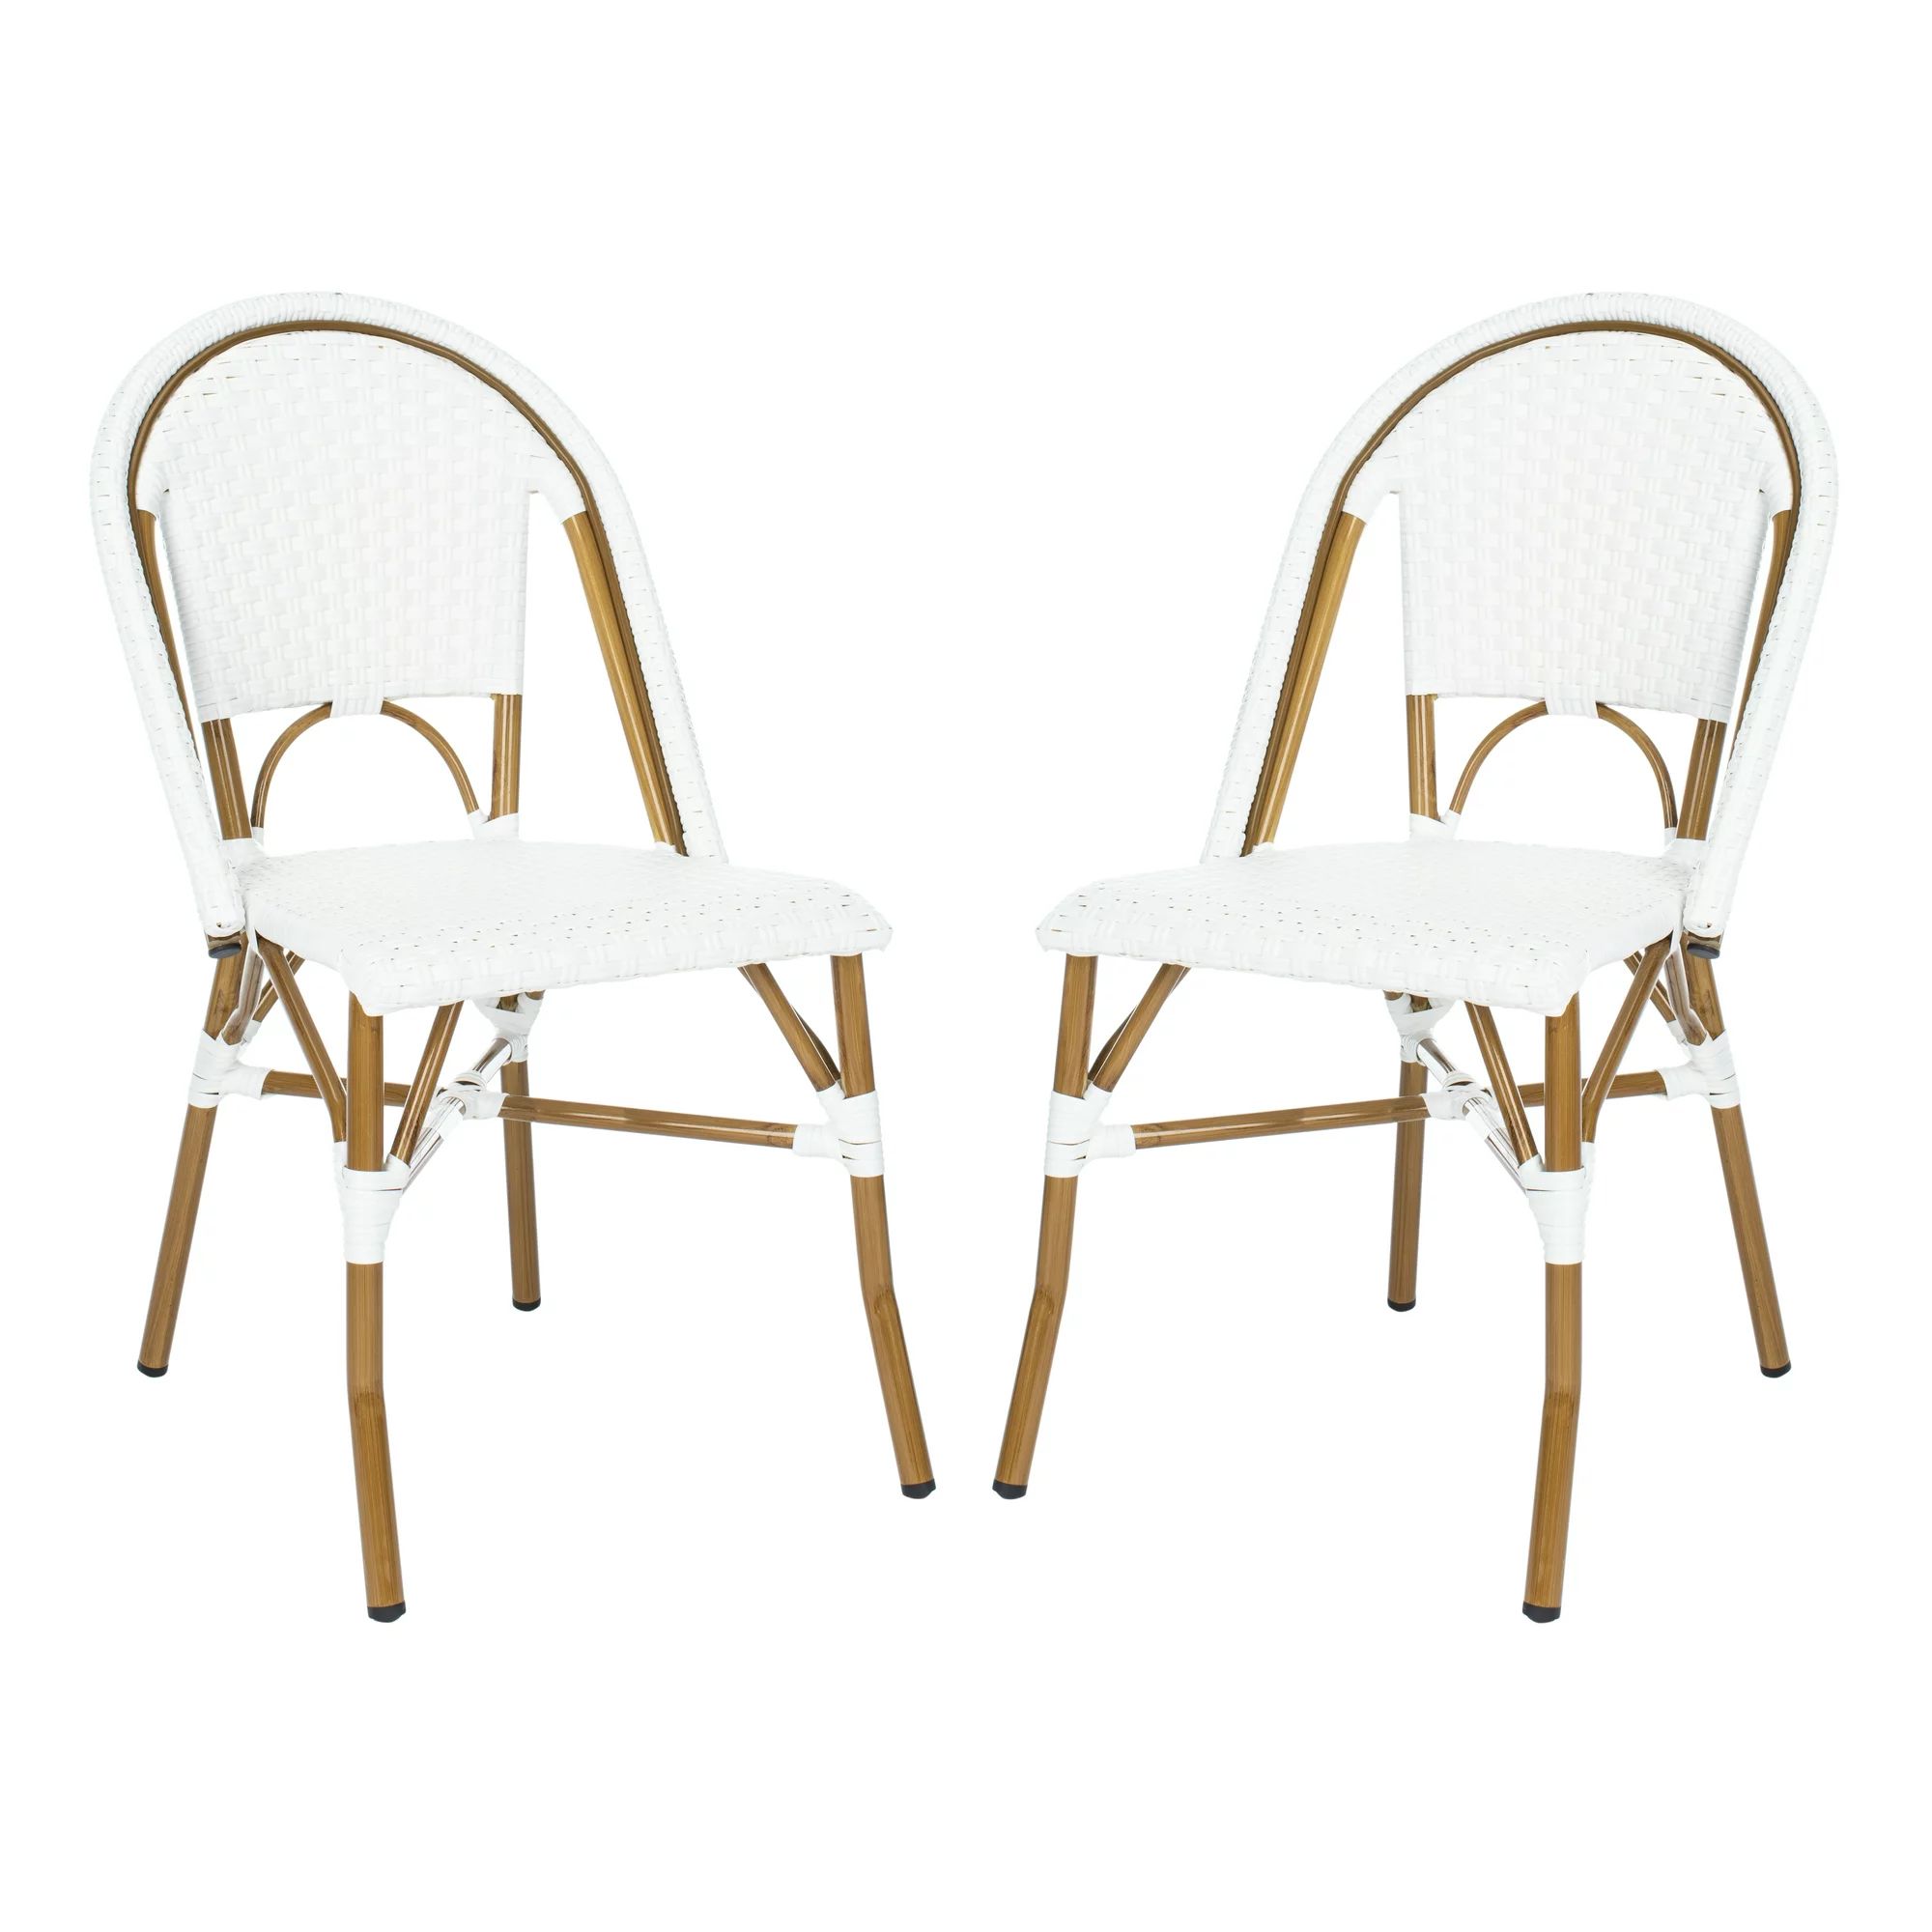 SAFAVIEH Salcha Outdoor Bistro Side Chair, White/Light Brown, Set of 2 | Walmart (US)